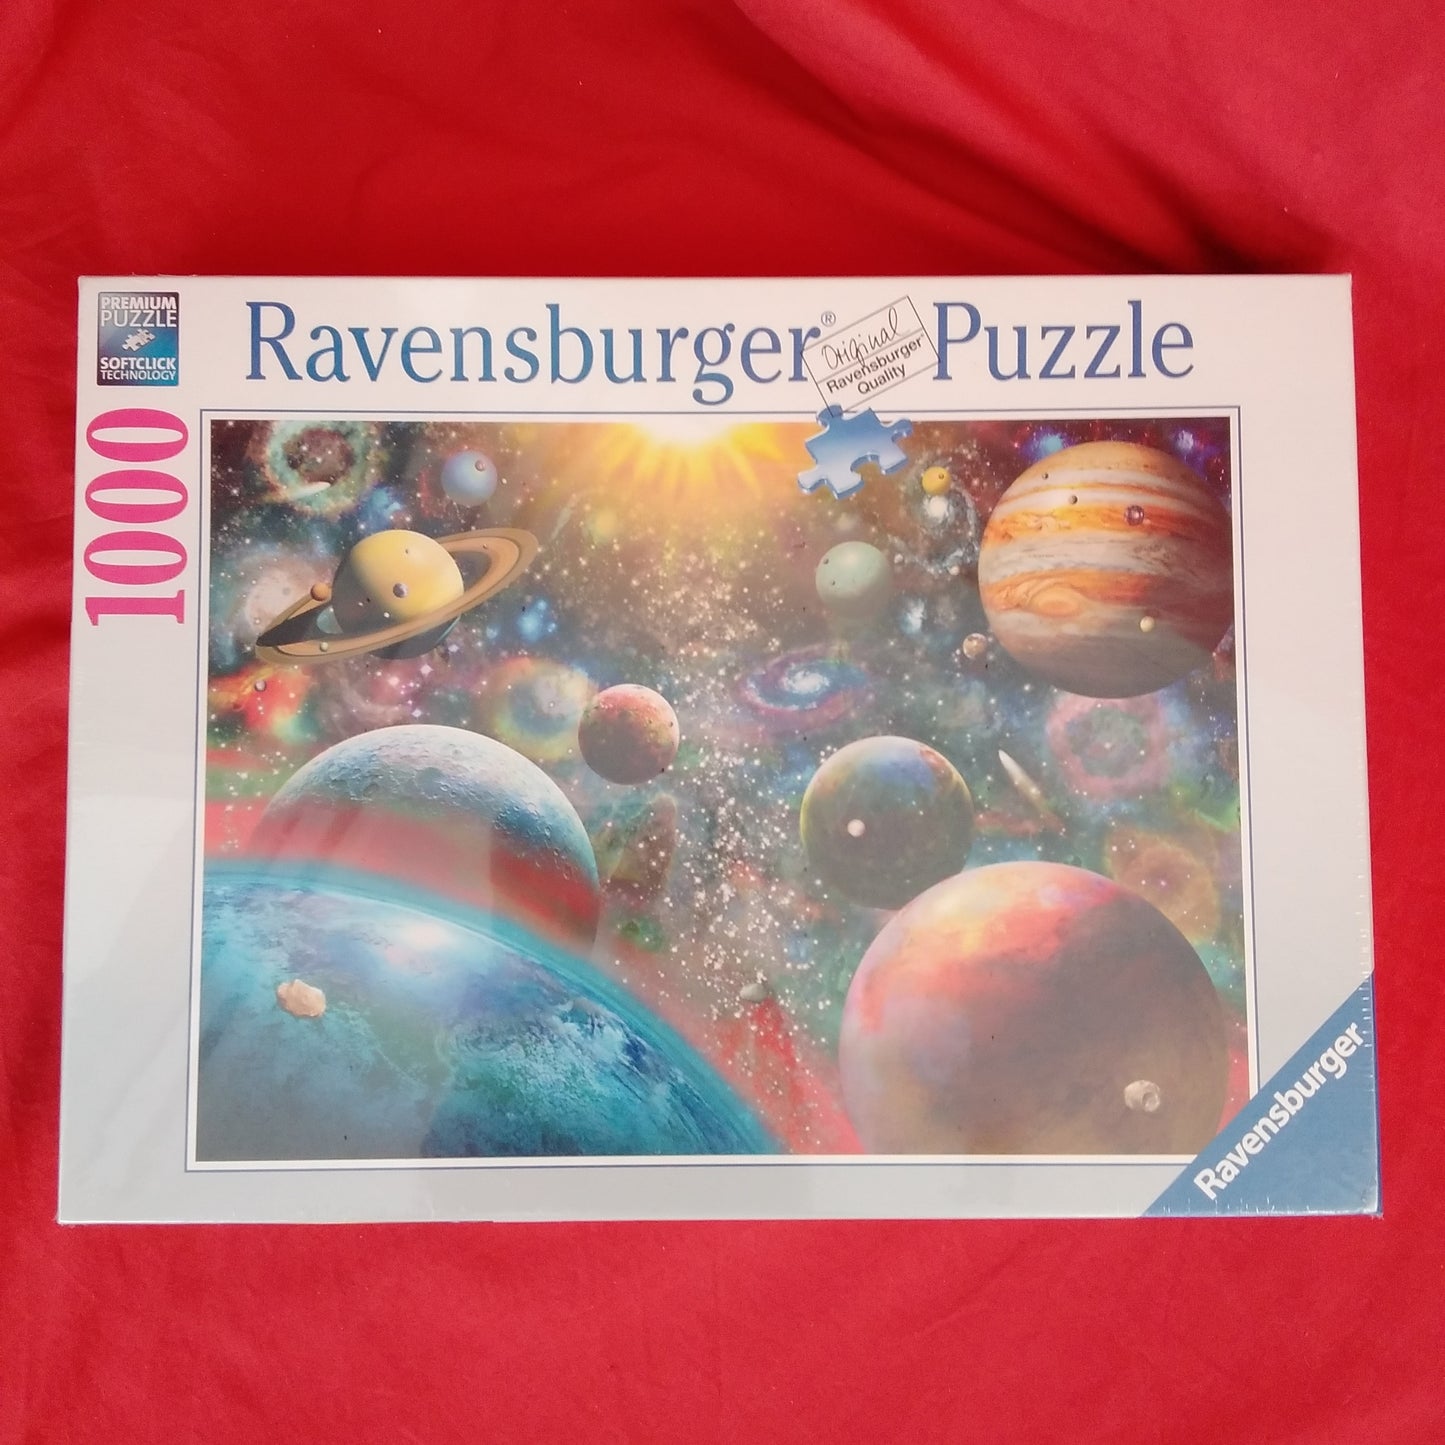 NIB - Ravensburger 'Planetary Vision' 1000 piece Jig Saw Puzzle #19858